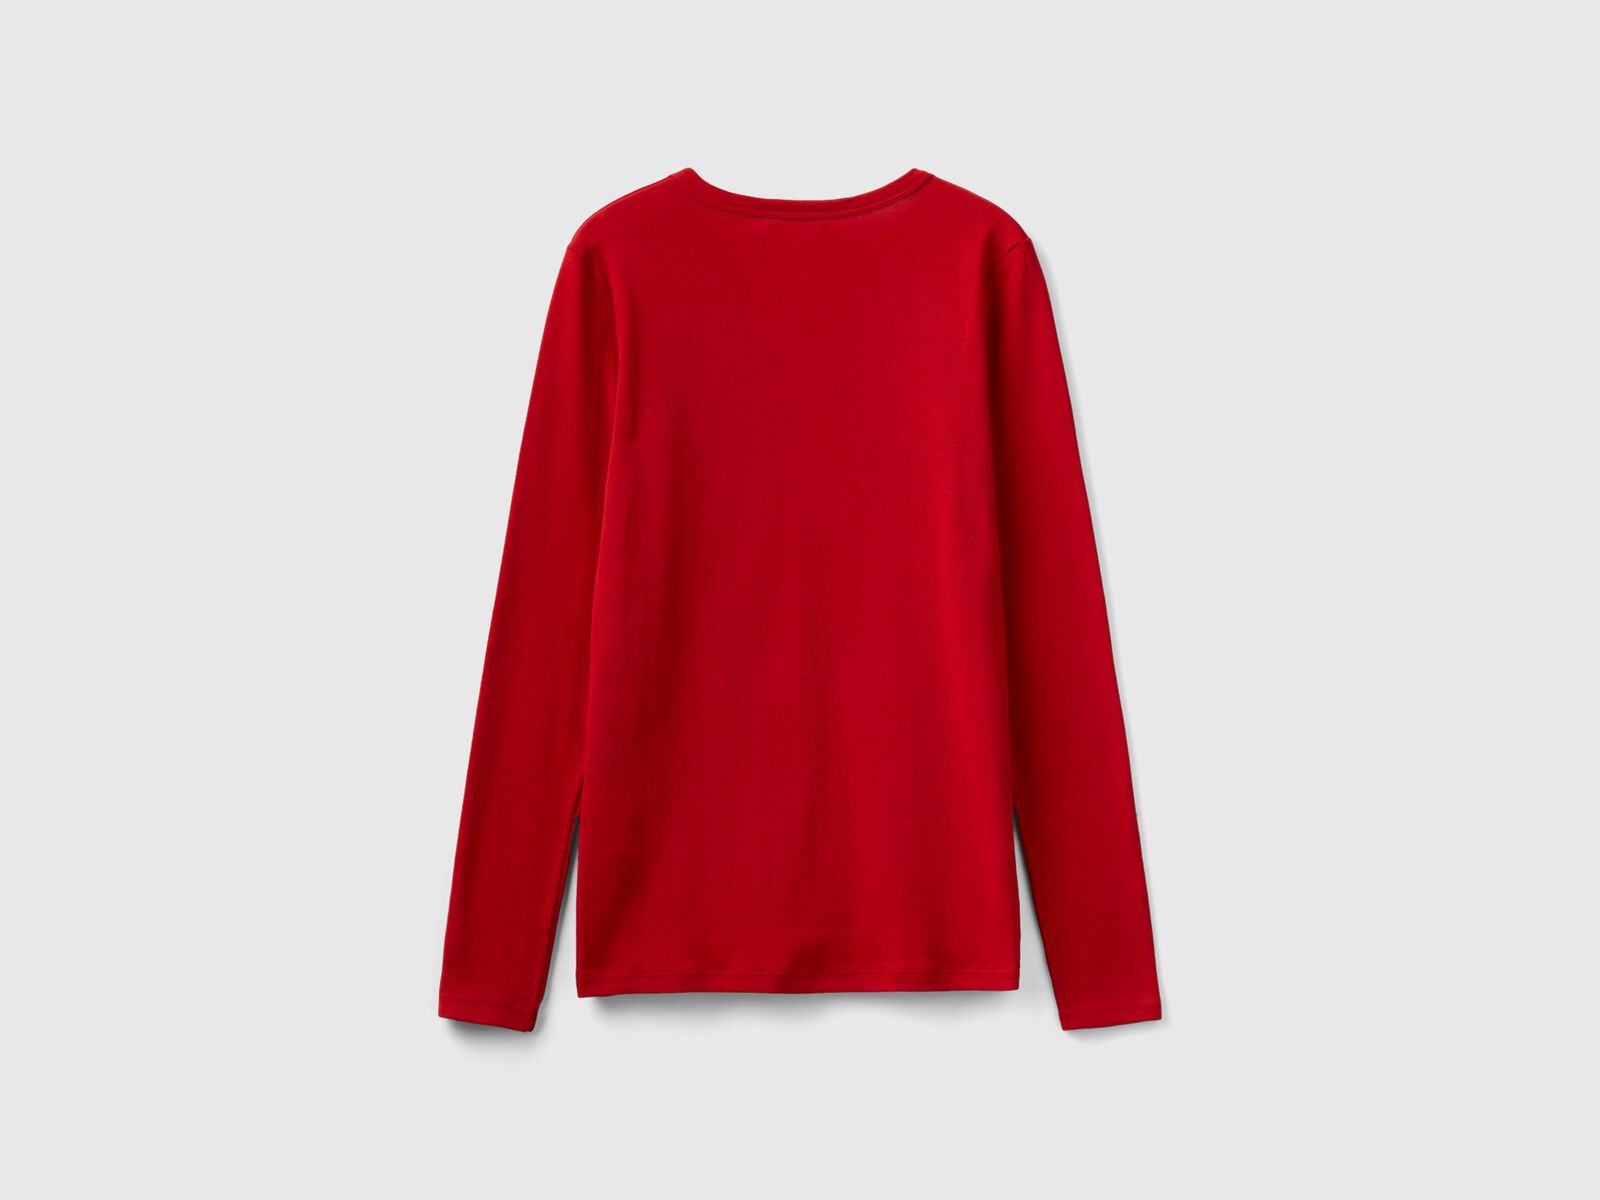 Camiseta Rojo Manga Larga Unisex barato – Tienda online de